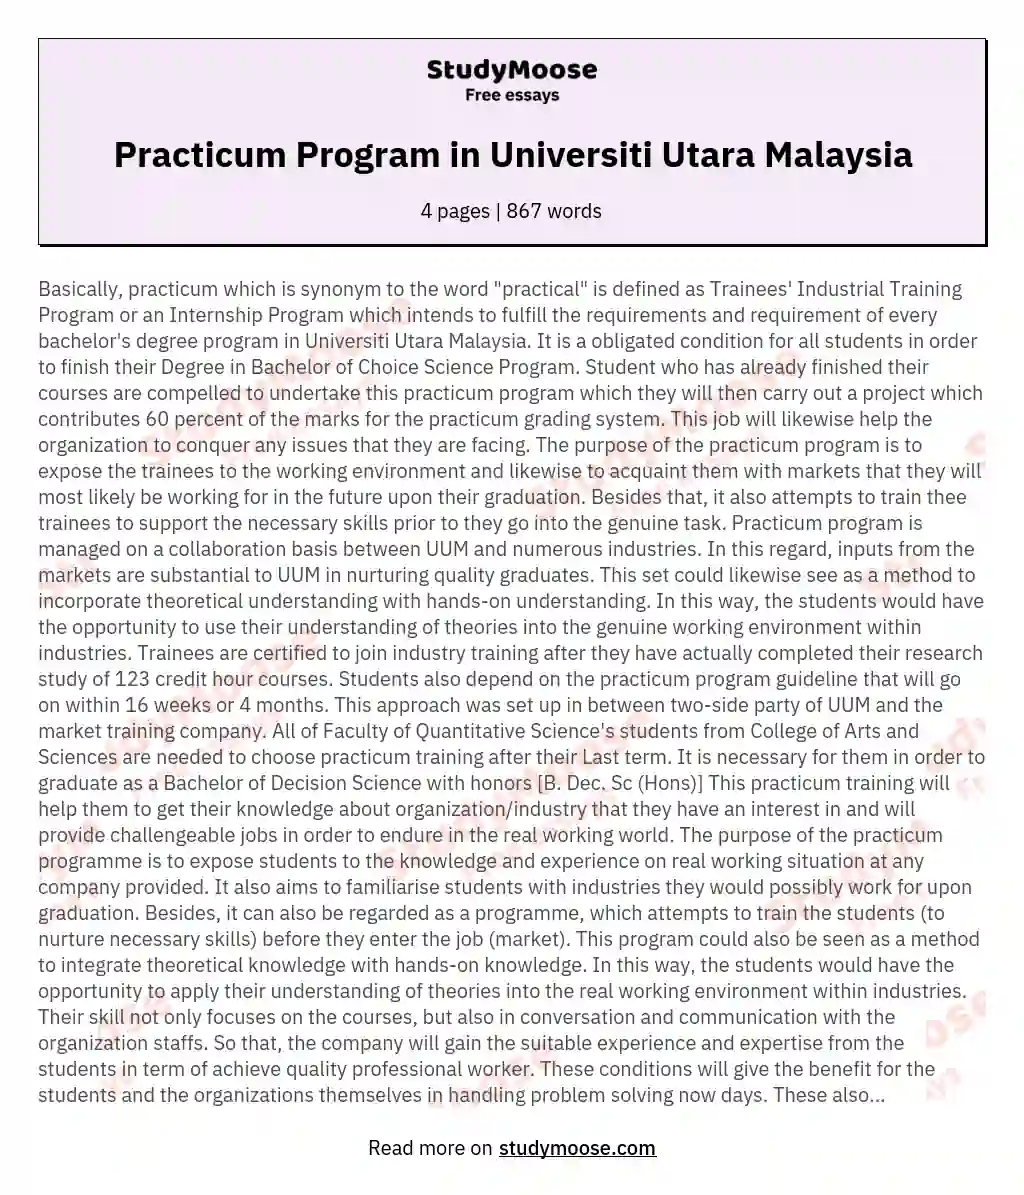 Practicum Program in Universiti Utara Malaysia essay